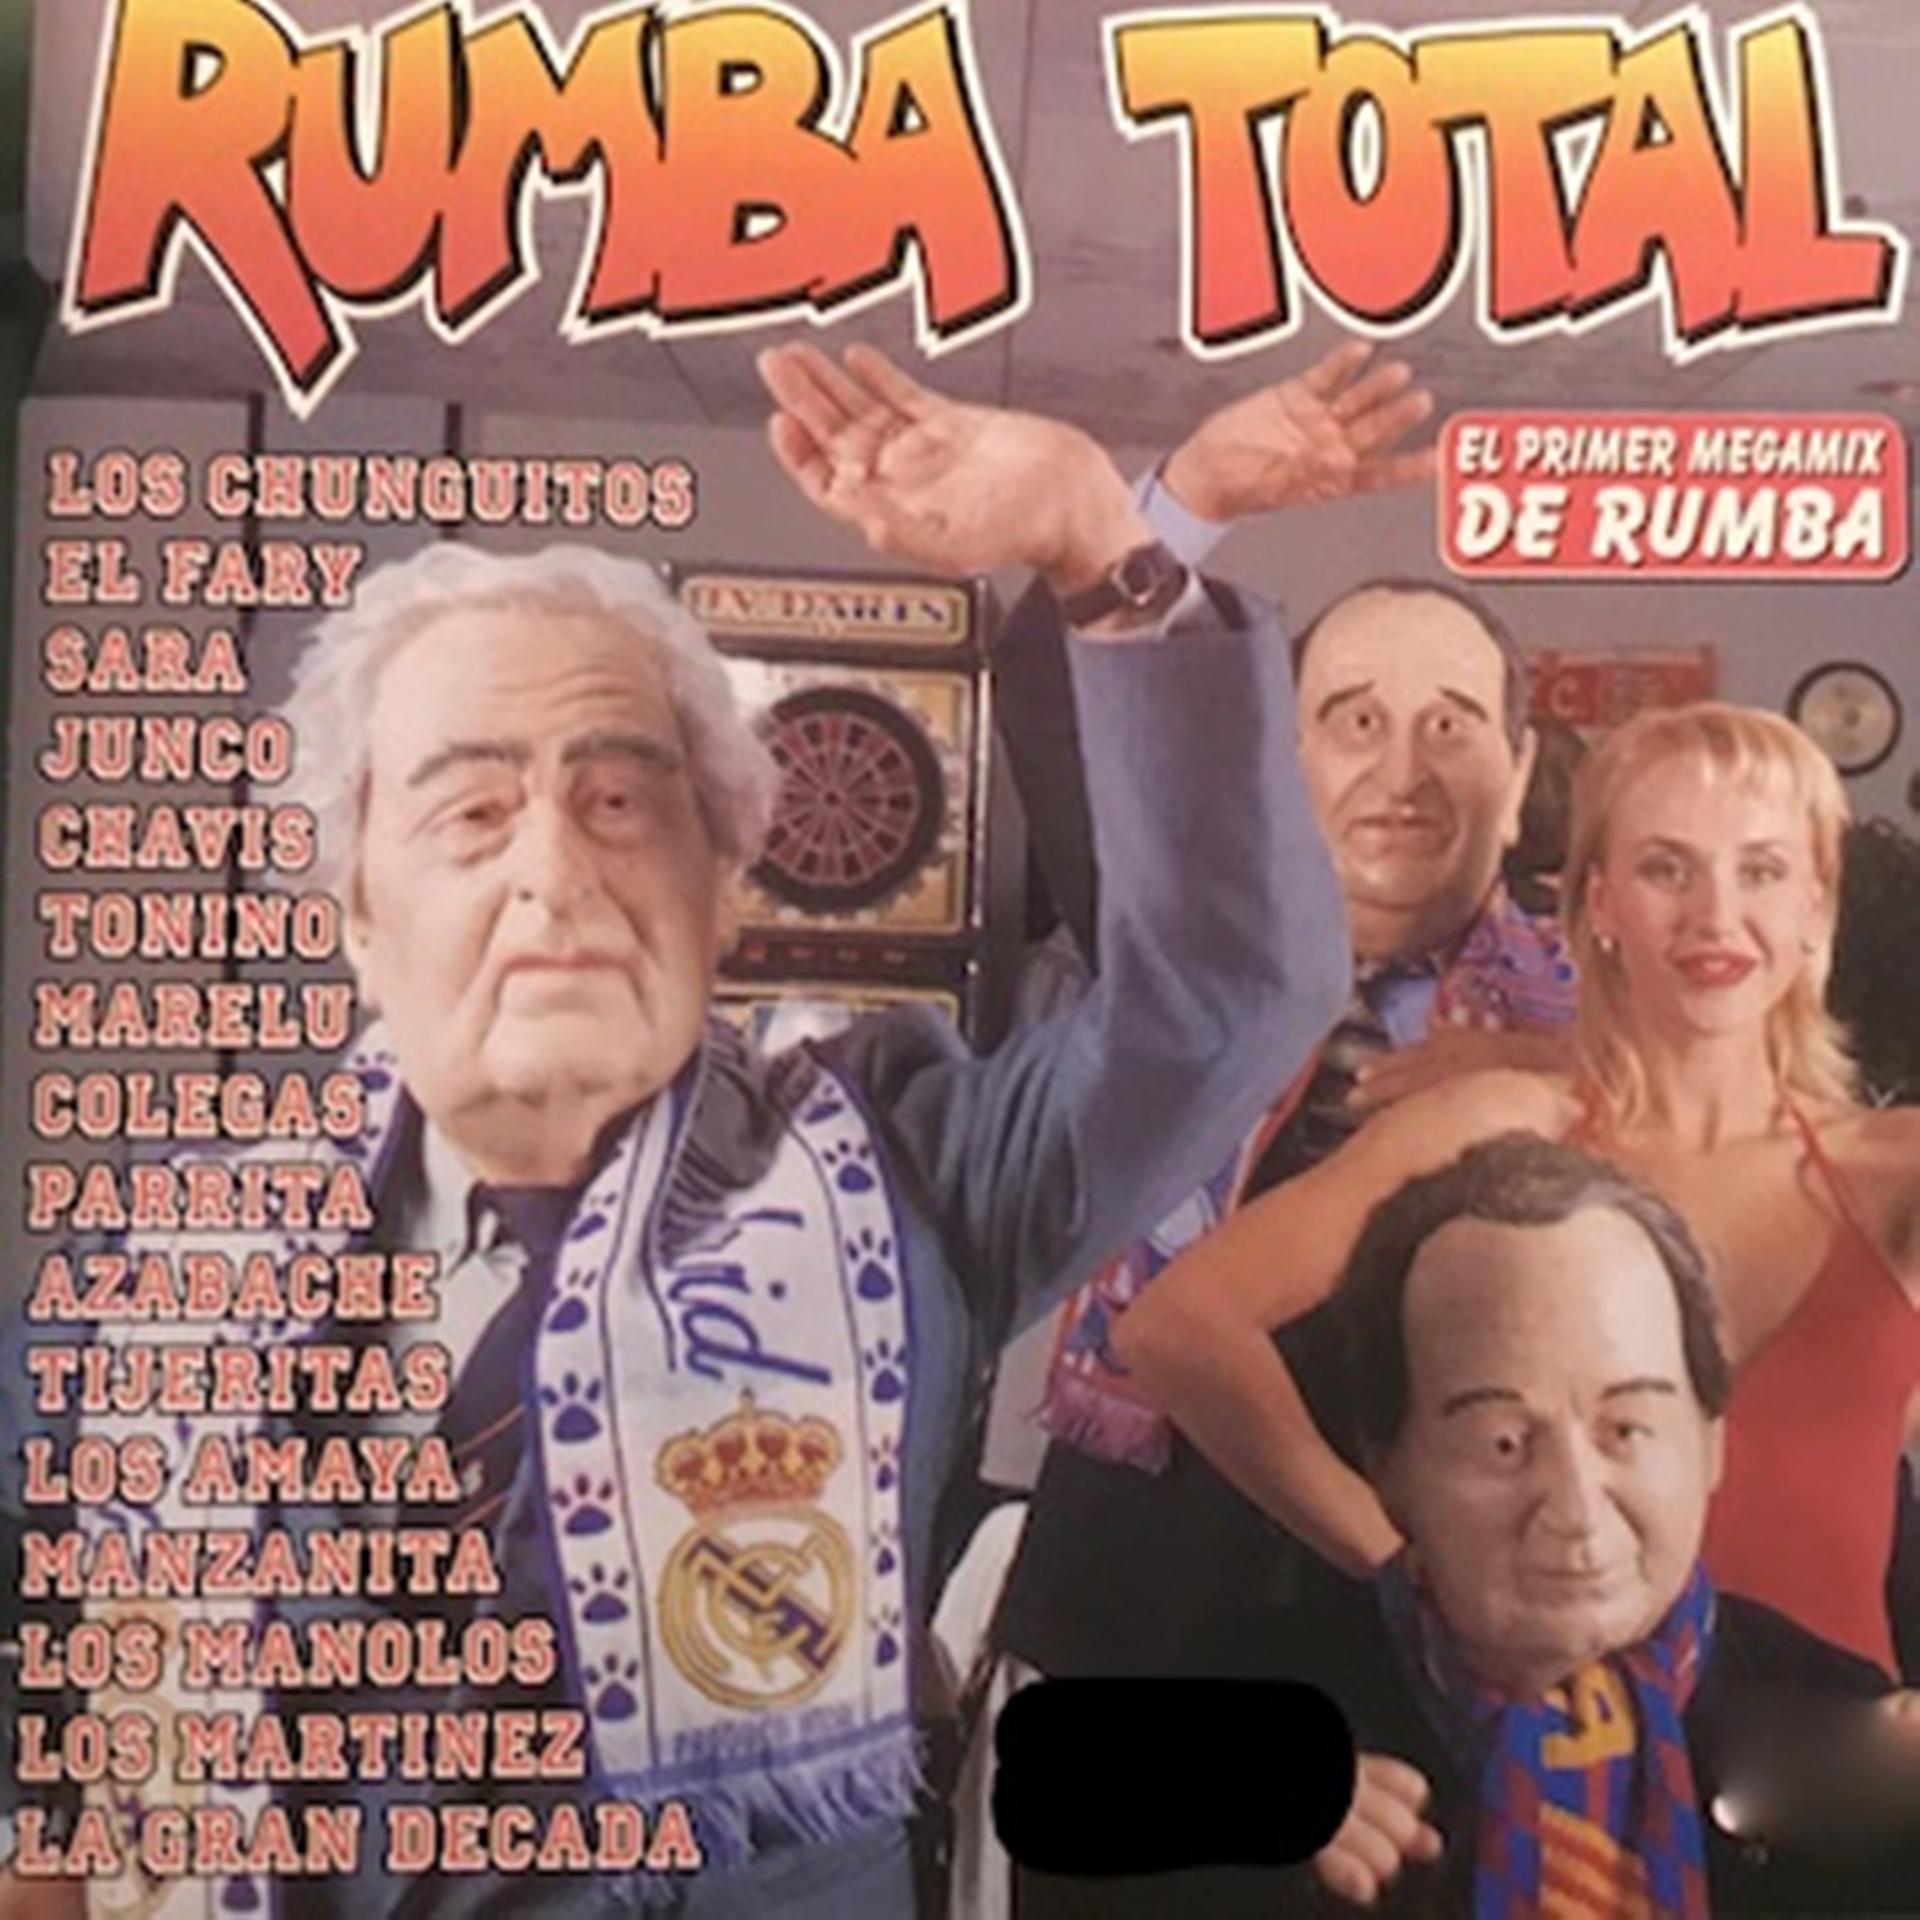 Постер альбома Rumba Total